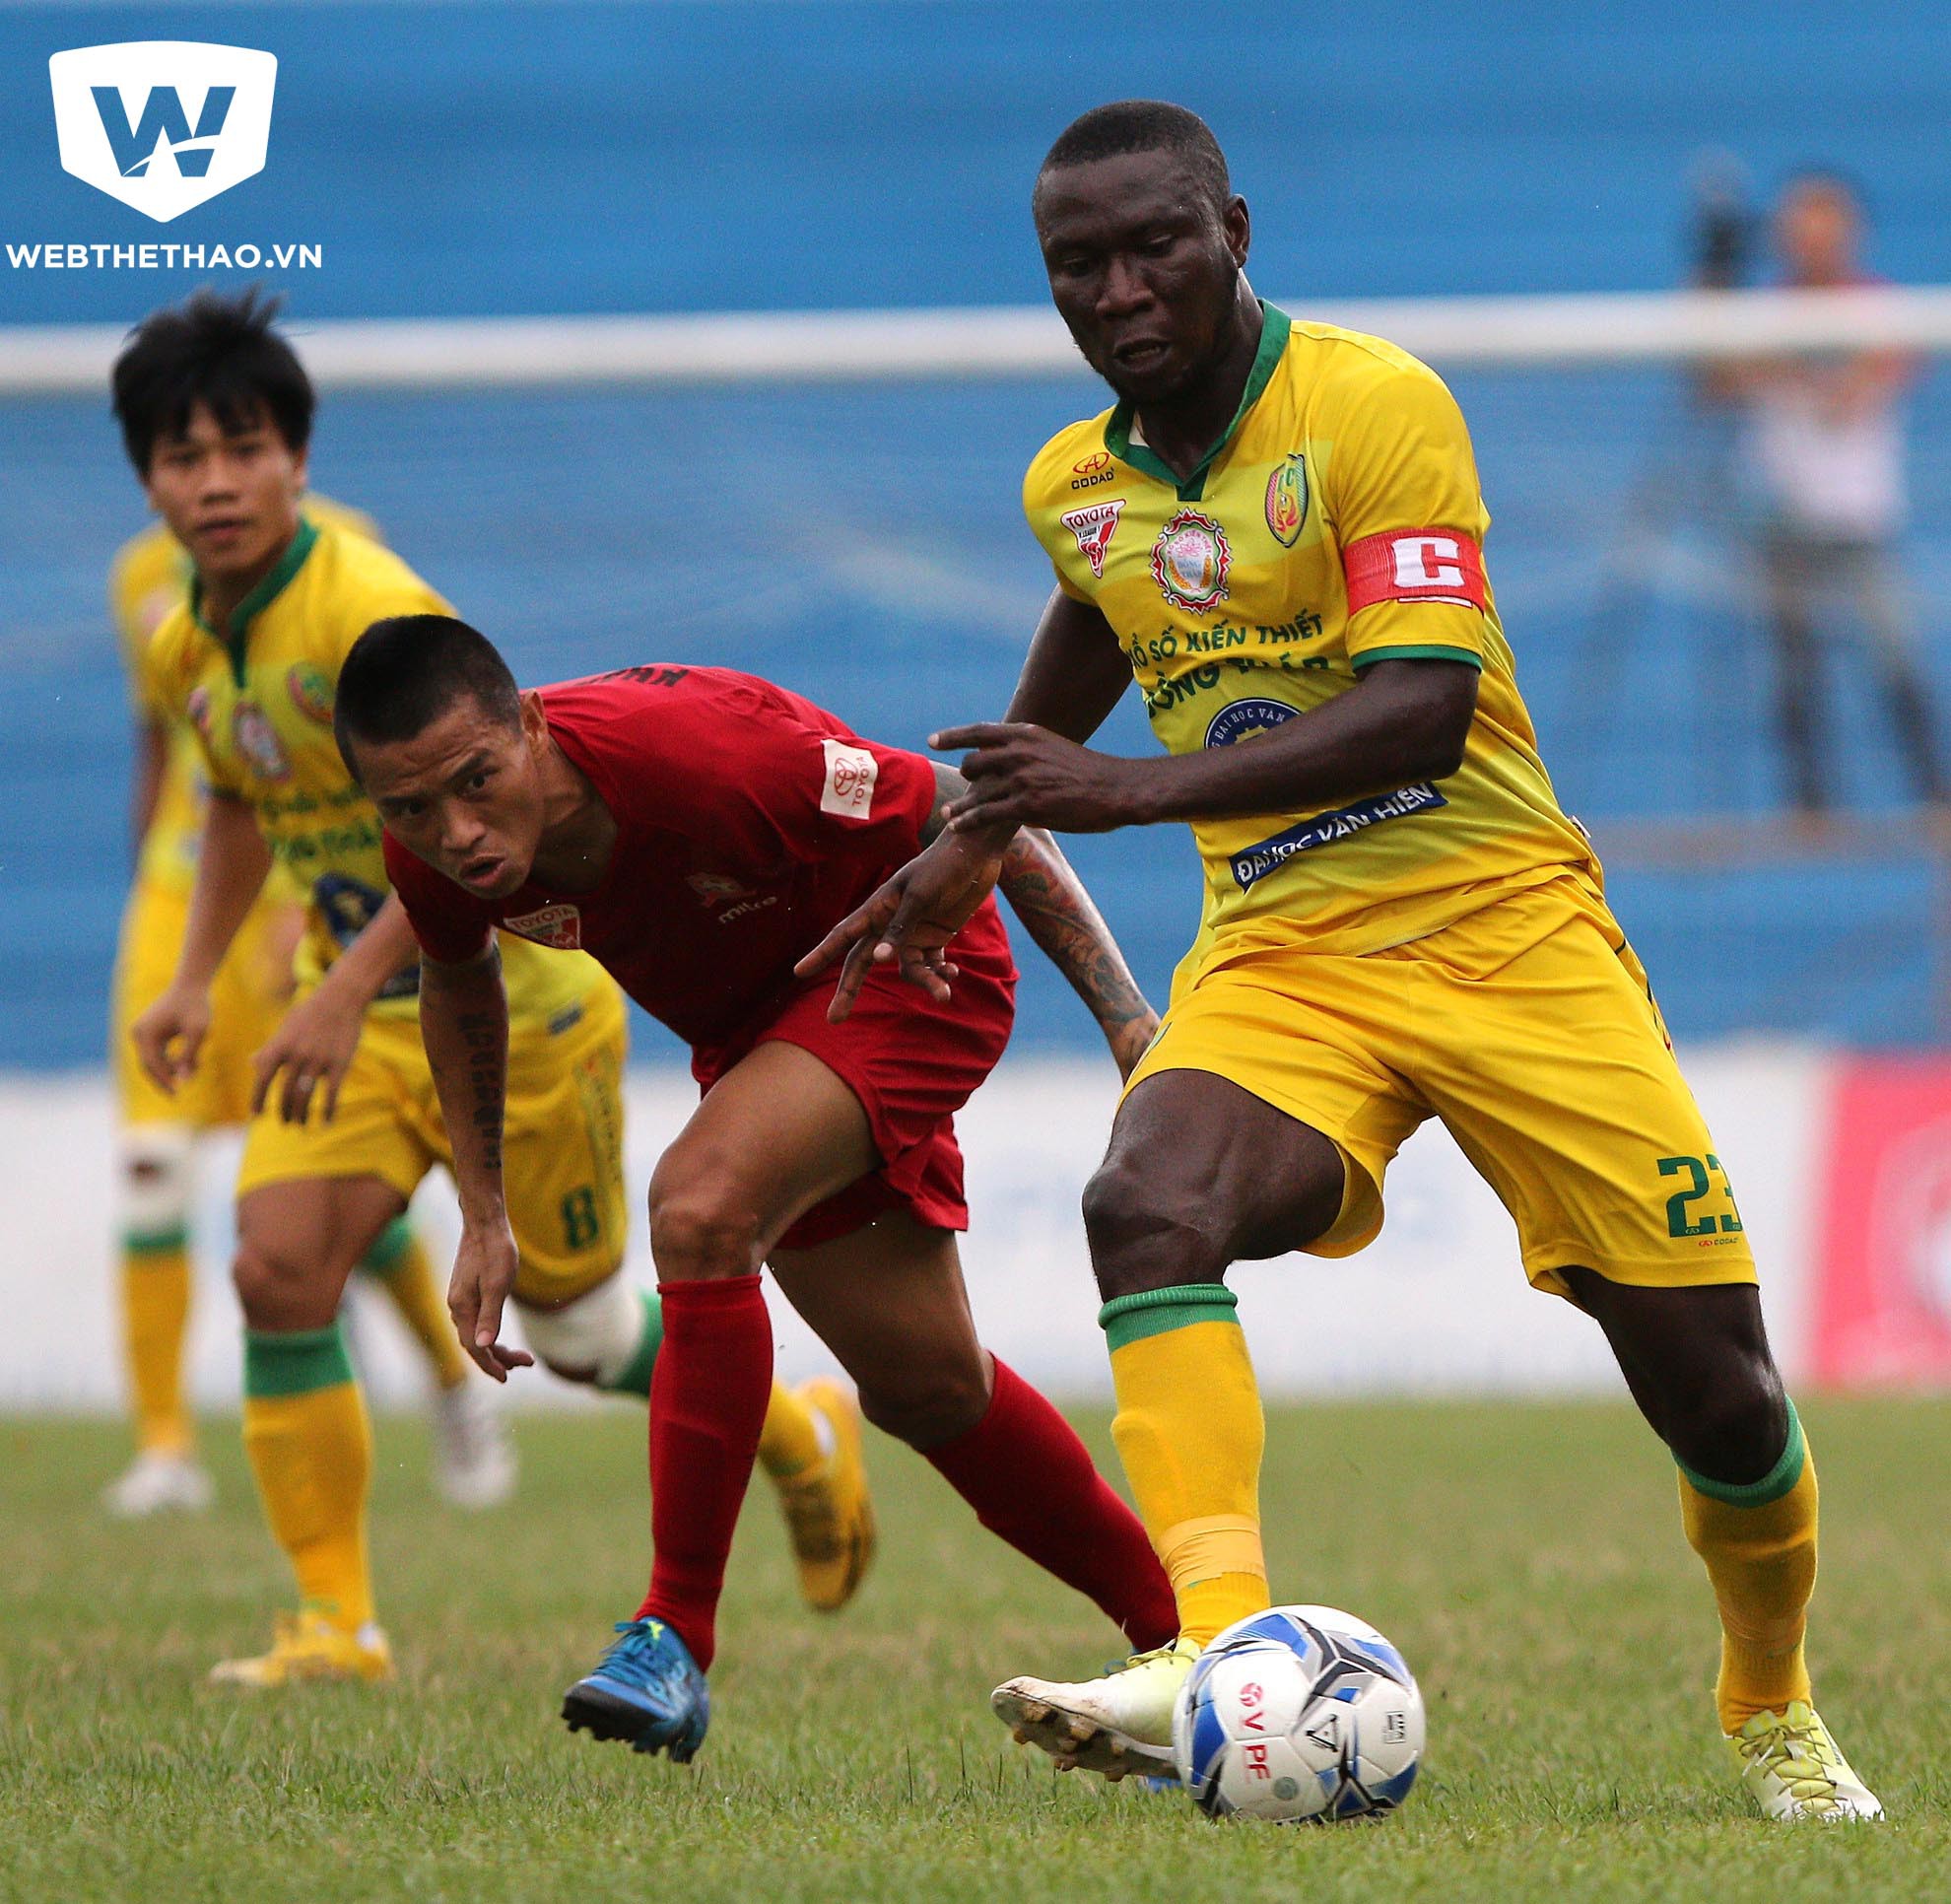 Cựu tiền đạo Đồng Tháp - Samson Kpenosen là một trong 3 cầu thủ đang thử việc tại T.Quảng Ninh. Ảnh Hải Đăng